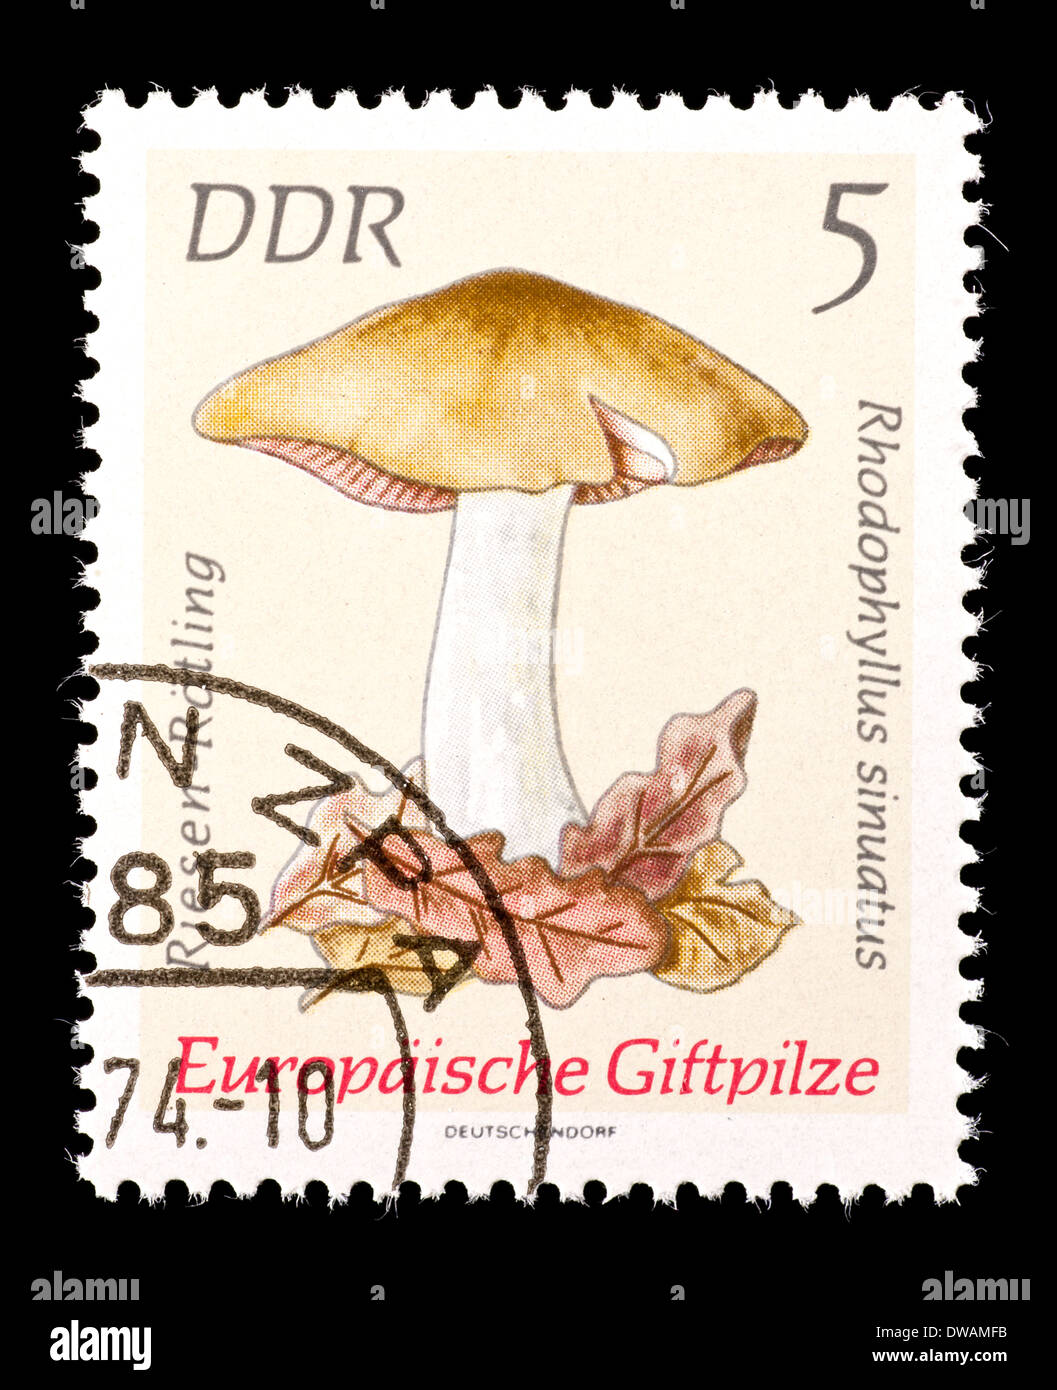 Briefmarke aus Ostdeutschland (DDR) Darstellung einer giftigen fahl Entoloma oder fahl Agaric Pilz (Rhodophyllus Sinuatus) Stockfoto